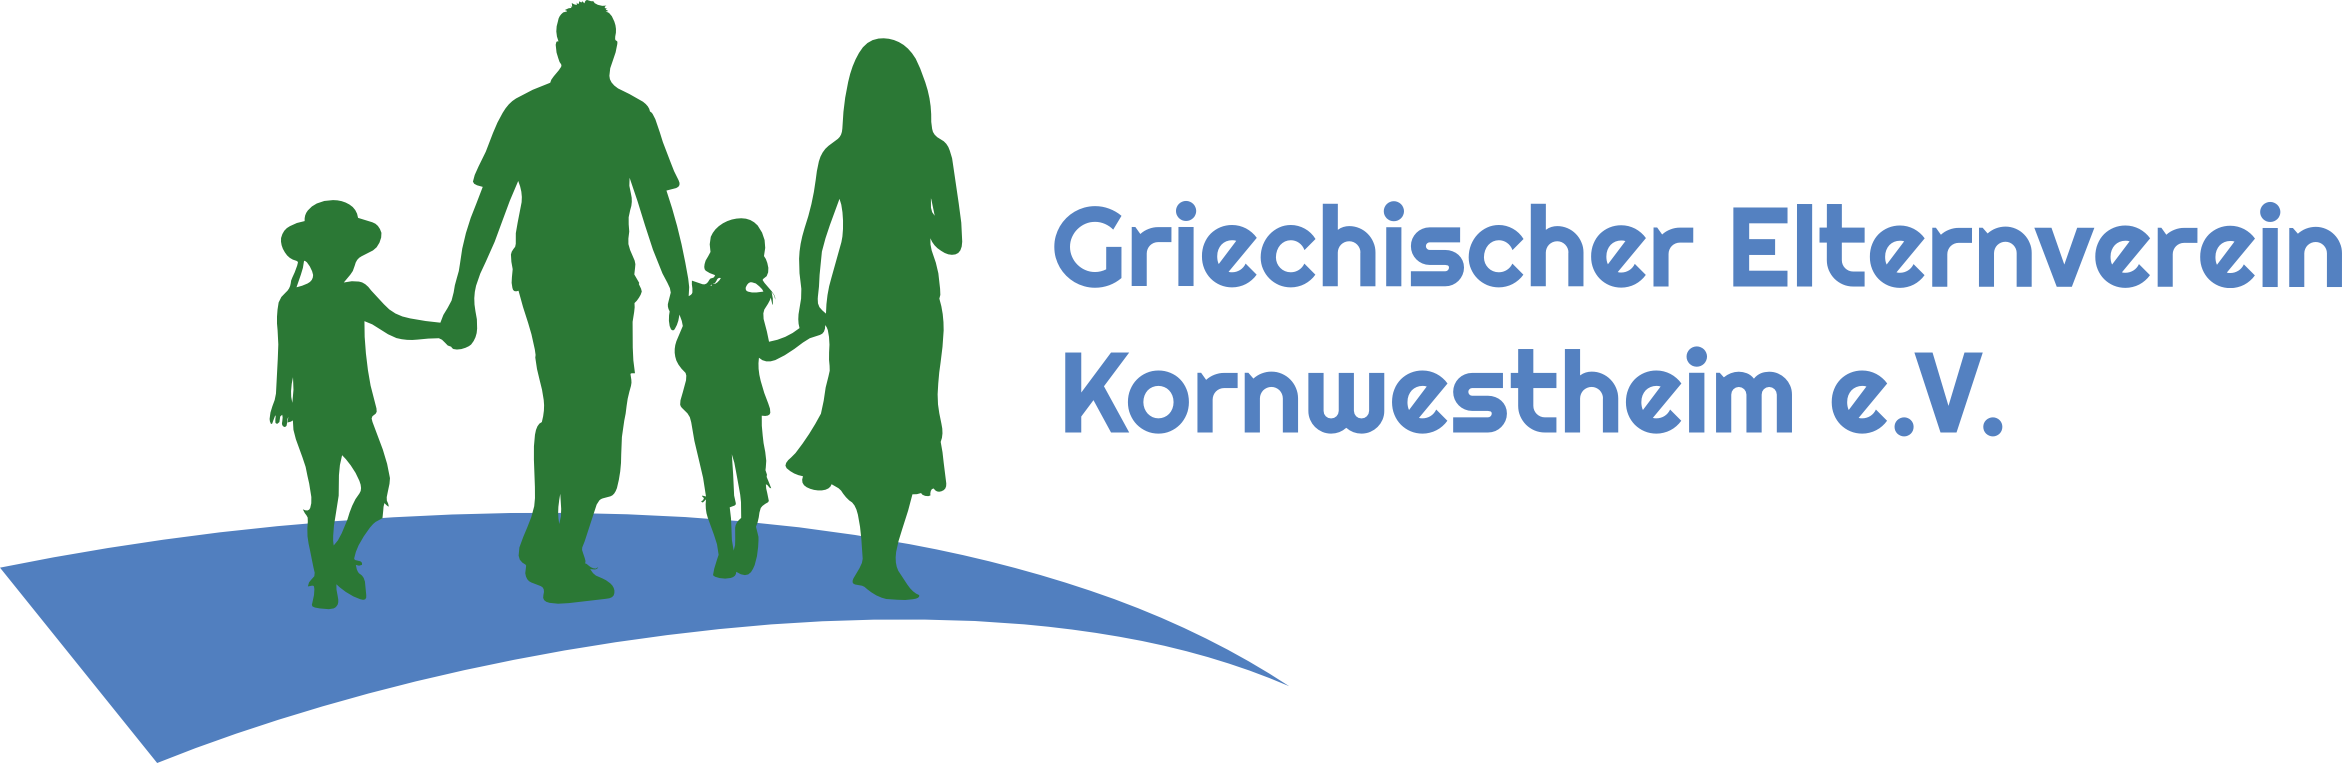 Griechischer Elternverein Kornwestheim